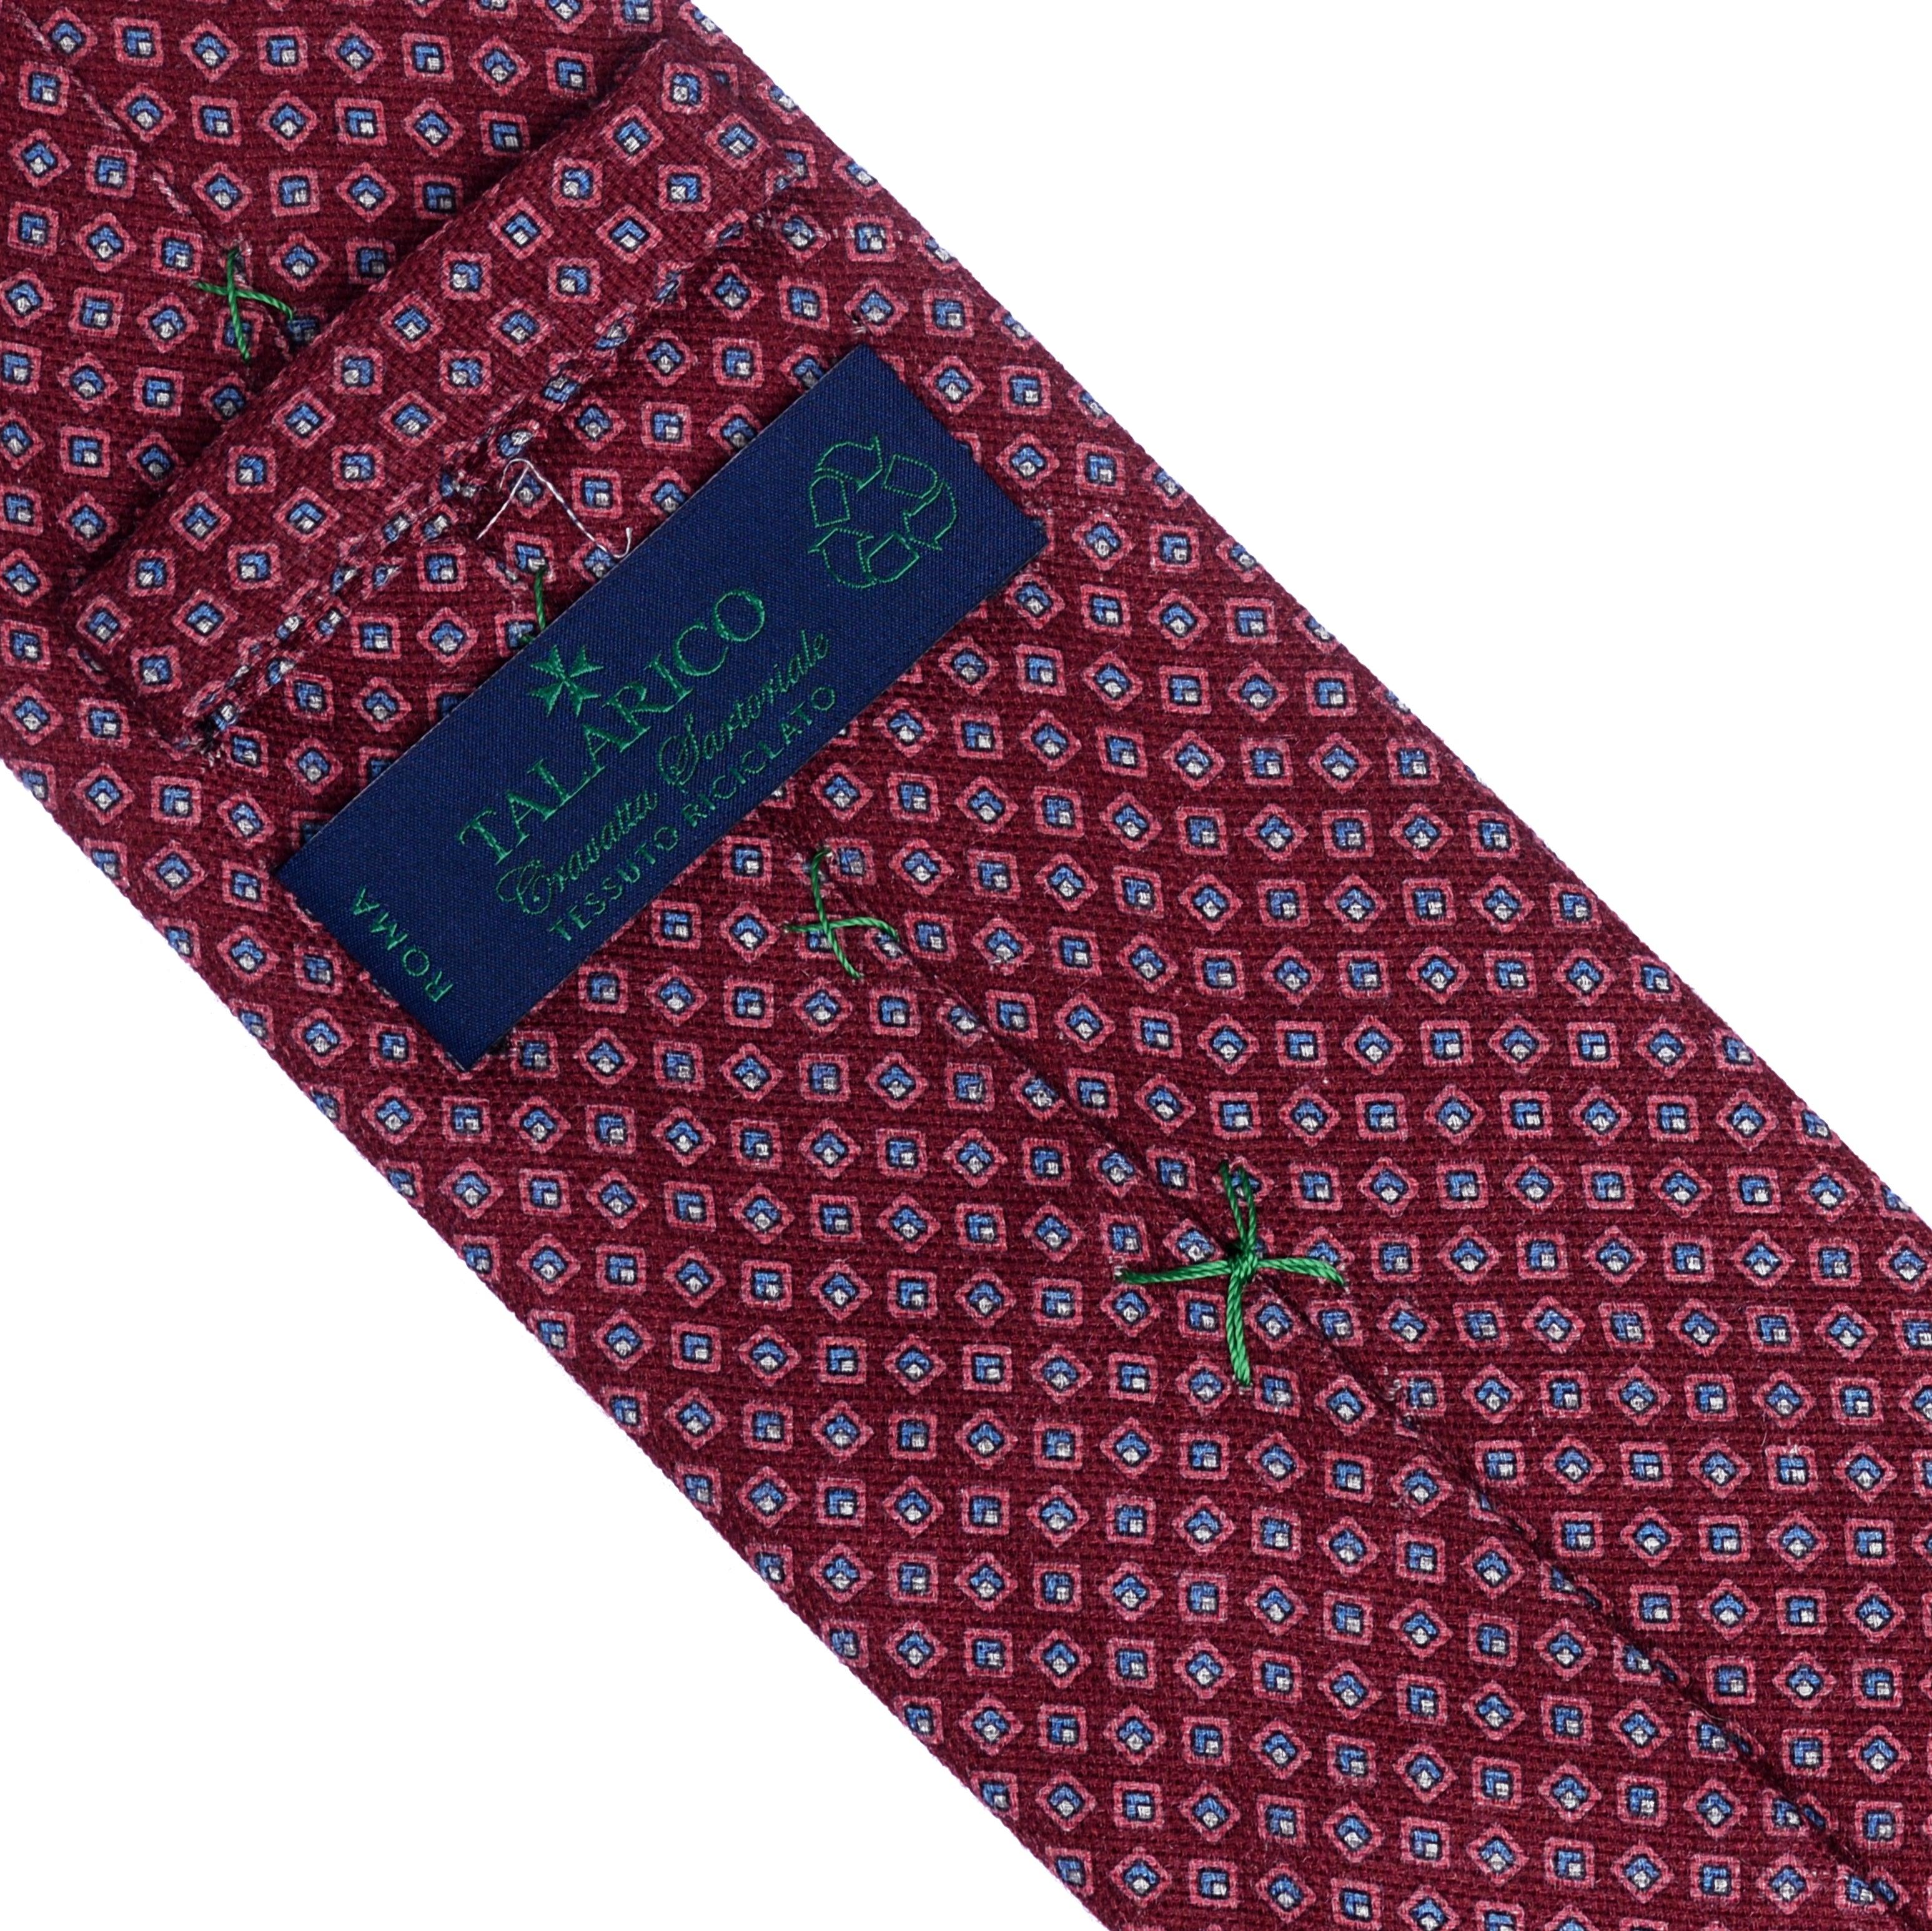 Cravatta 3 Pieghe Riciclate TAL 334 - Talarico Cravatte